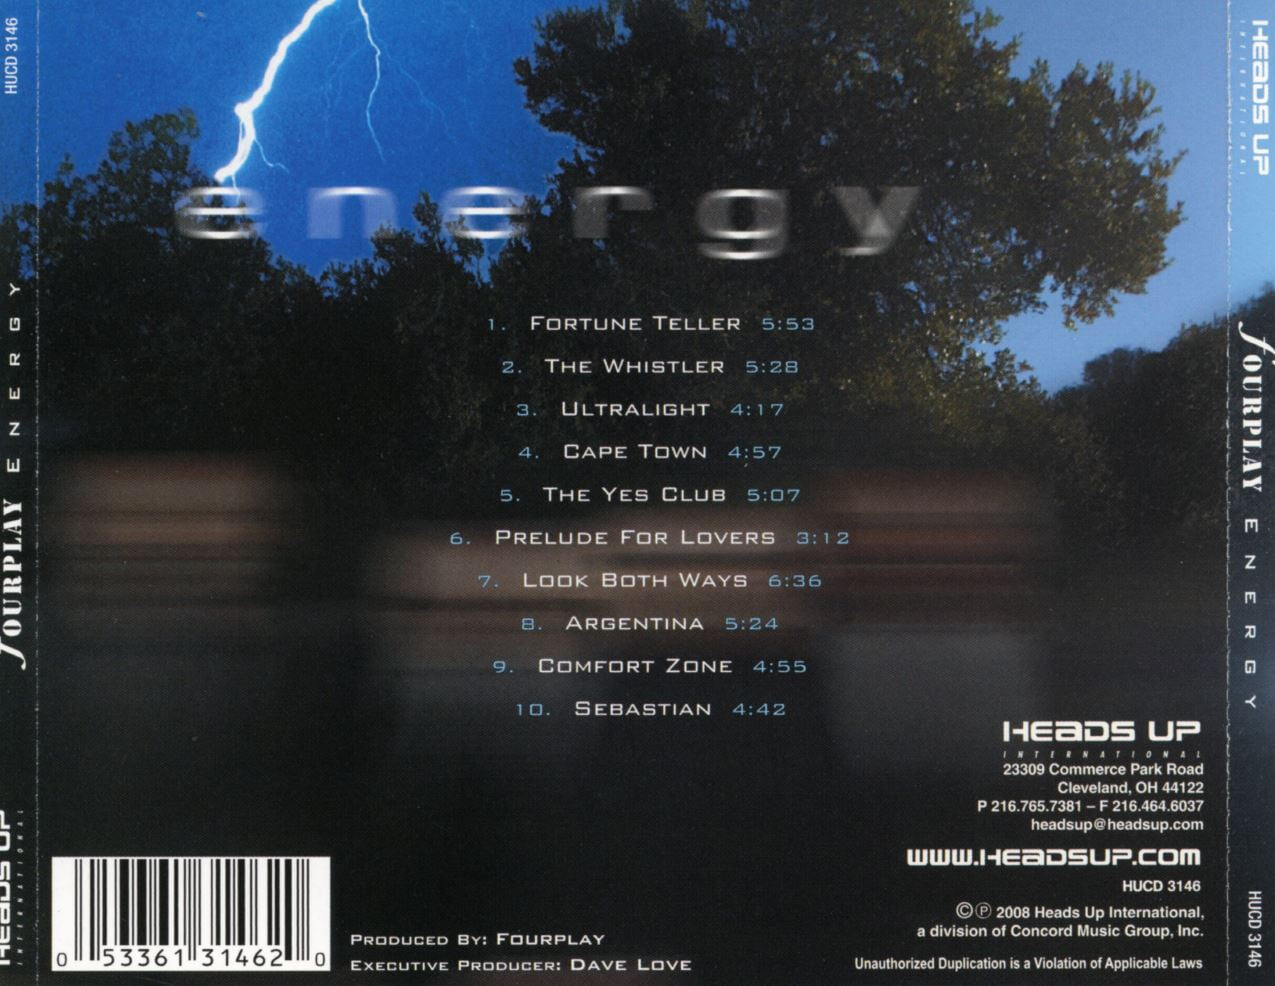 포플레이 - Fourplay - Energy [U.S발매]